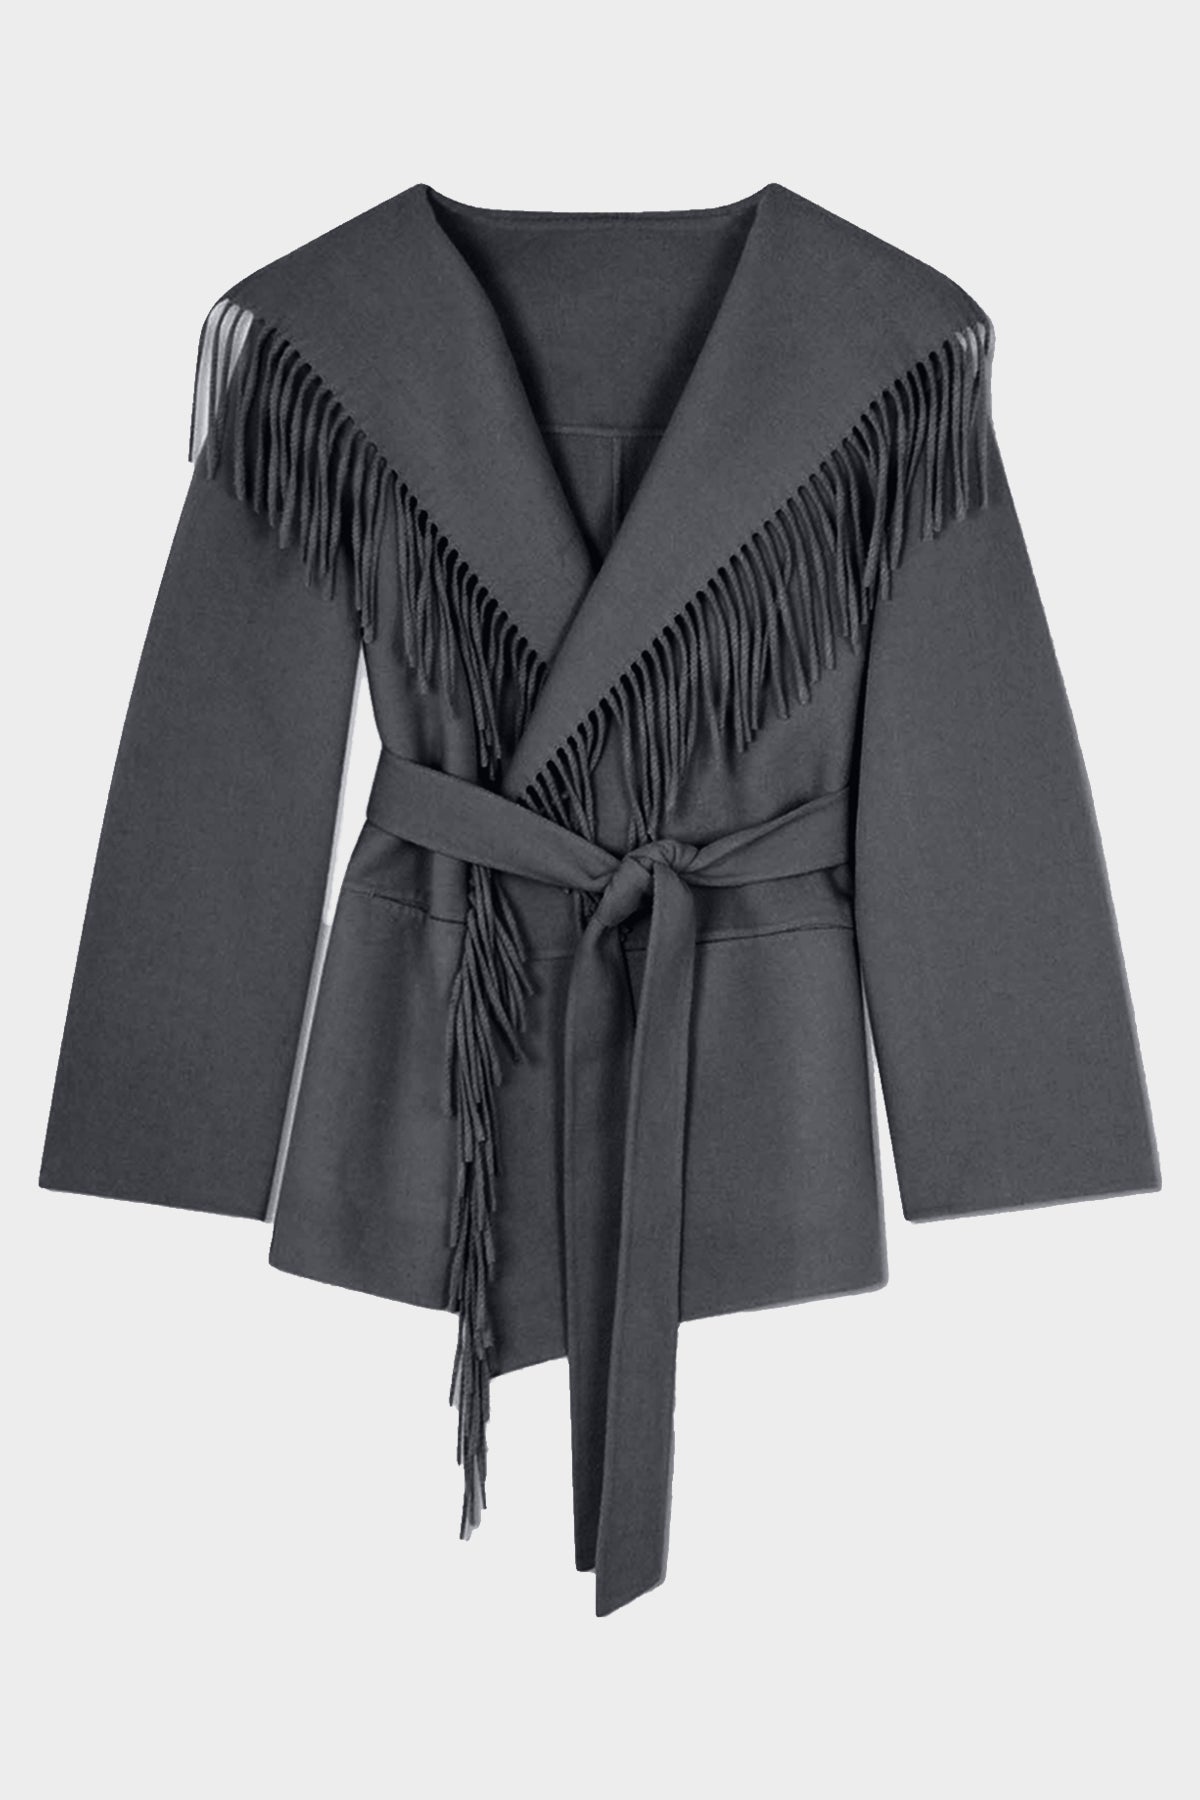 Rowen Fringe Jacket in Grey Melange - shop-olivia.com